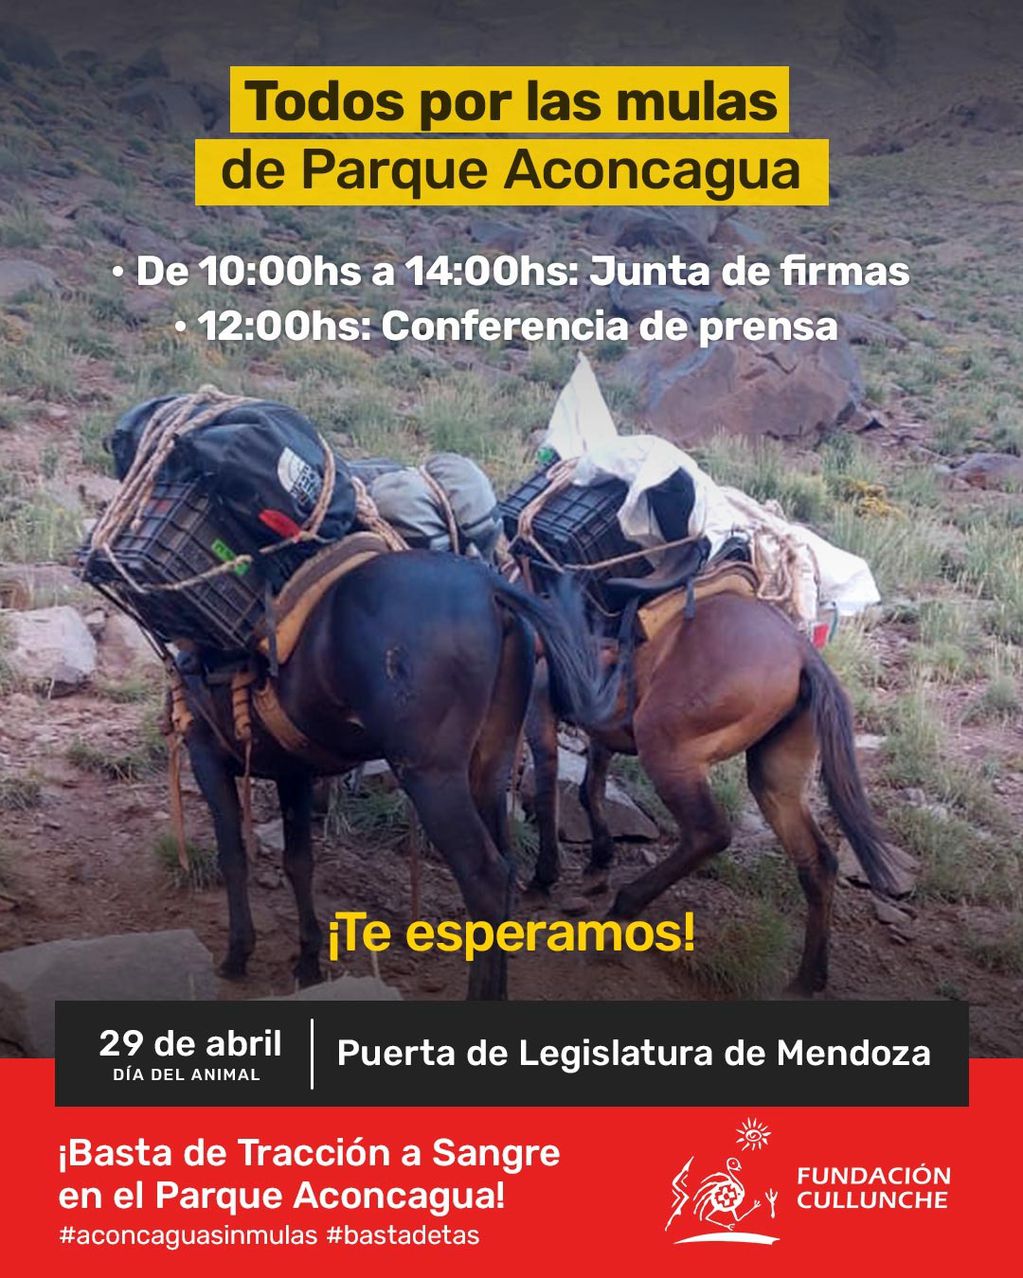 Piden una ley para “abolir el trabajo esclavo” de las mulas en el Aconcagua: ¿cuáles serían las alternativas? Foto: Fundación Cullunche